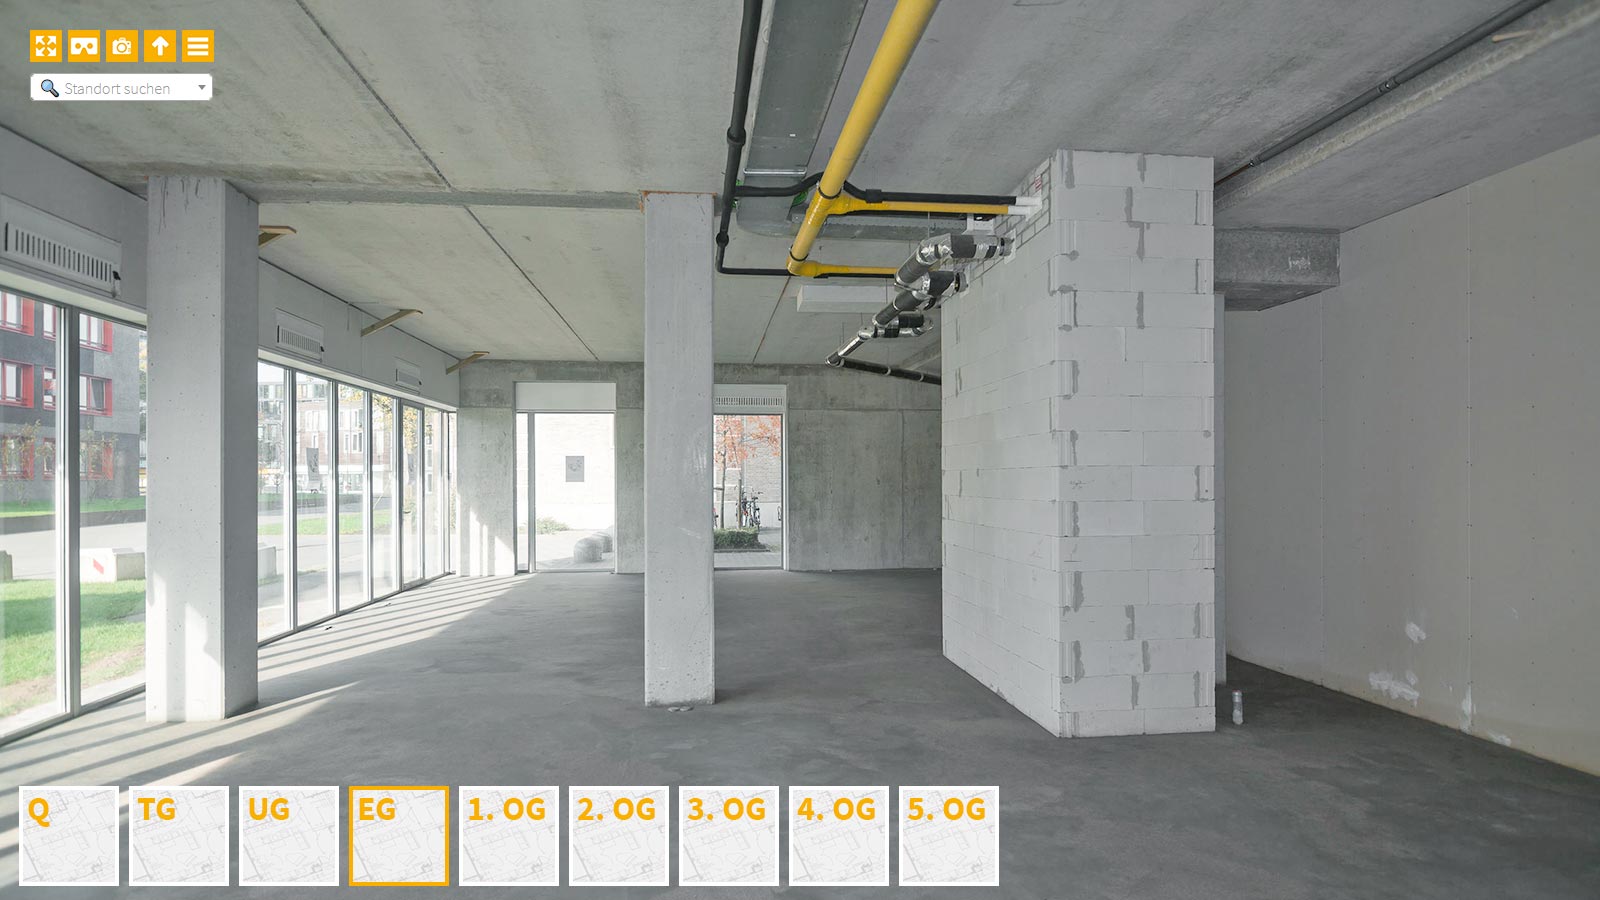 Baudokumentation 360 Grad bei gestörten Projekten in 


	


	


	


	


	


	


	


	


	


	Leverkusen









, Bilddokumentation als virtueller Rundgang